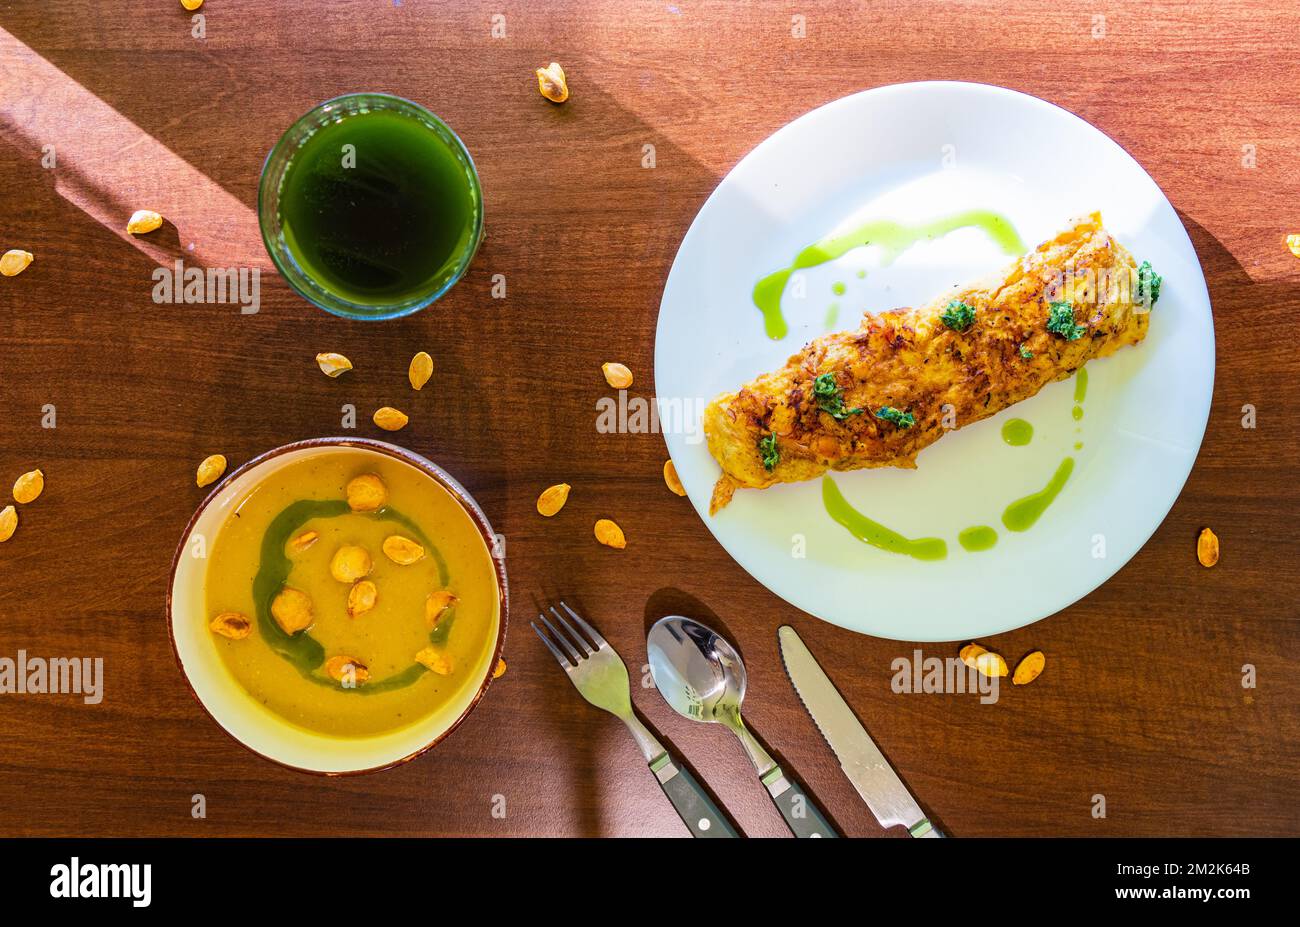 Vista dall'alto verso il basso sul tavolo da cucina con pochi piatti come omelette all'uovo con prezzemolo e zuppa di crema di zucca e bicchiere di frullato verde Foto Stock